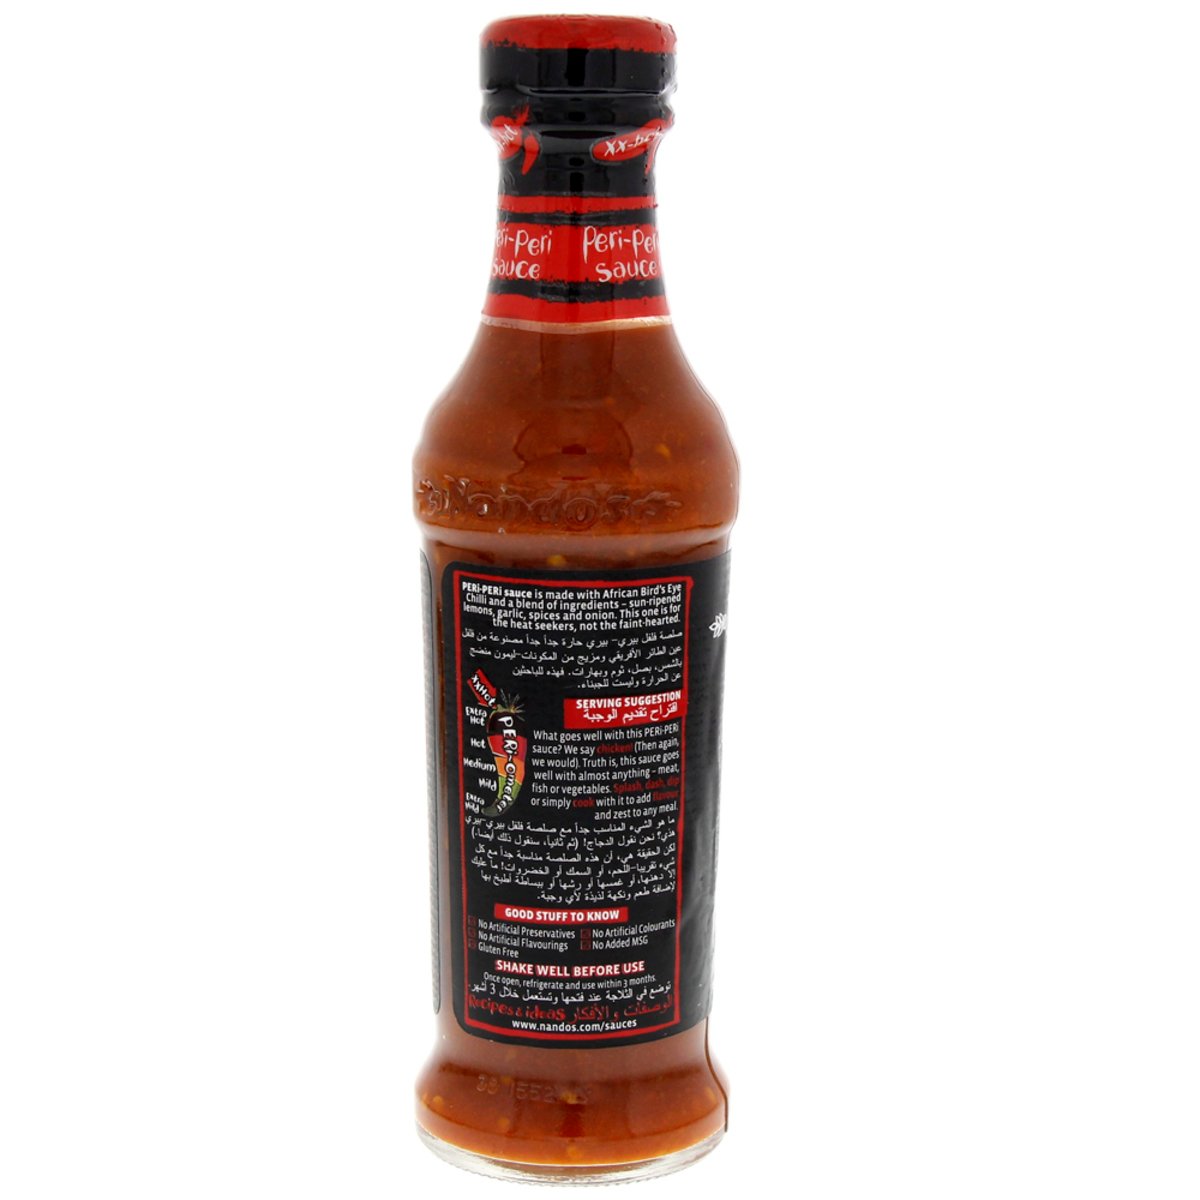 Nando's Extra Extra Hot Peri-Peri Sauce 250g